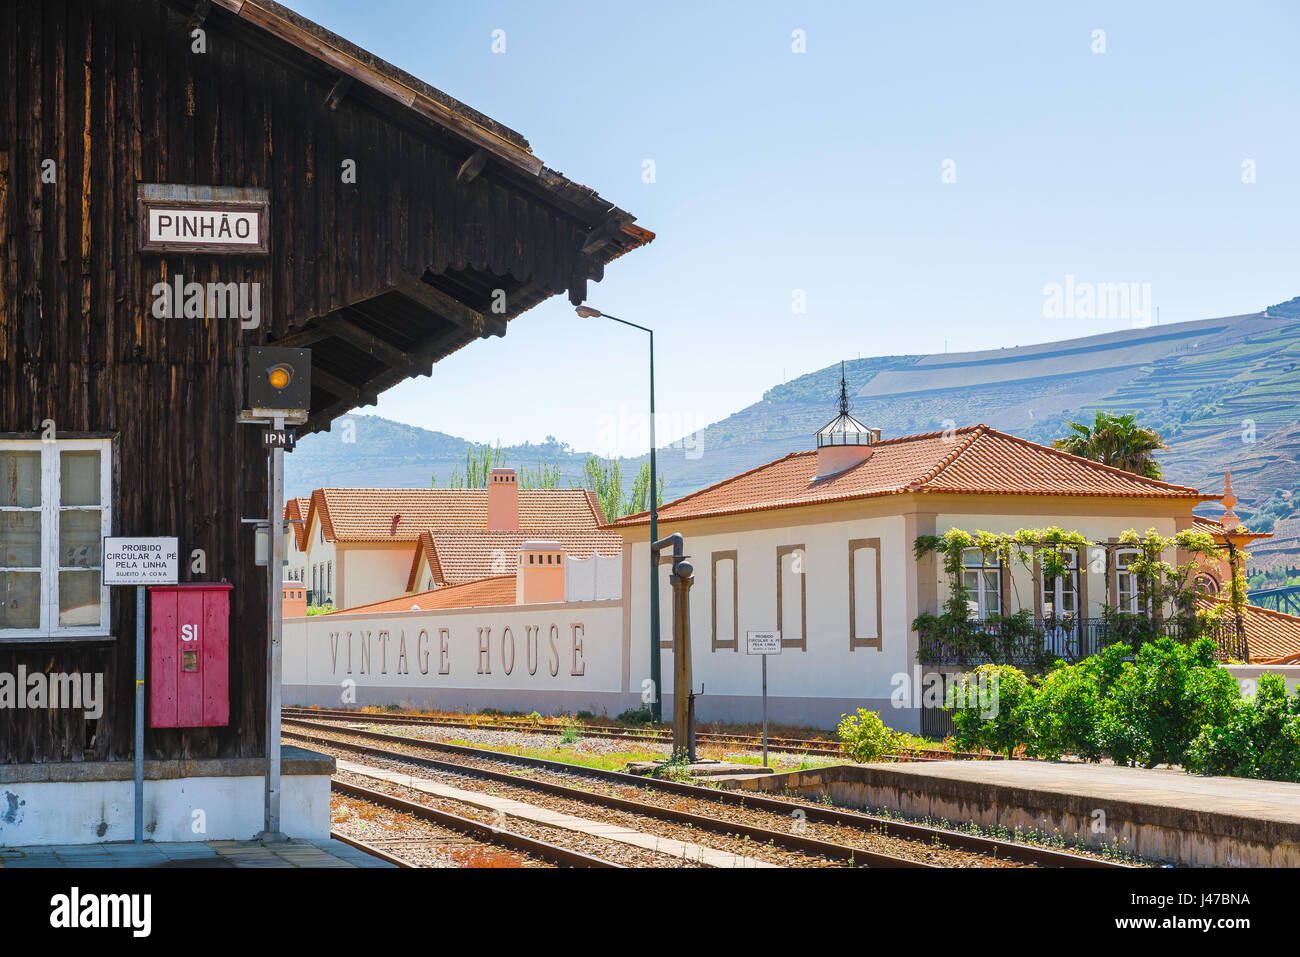 Pinhao Portogallo stazione ferroviaria, la stazione ferroviaria e la piattaforma adiacente vintage house nella Valle del Douro port wine town di Pinhao, Portogallo Foto Stock